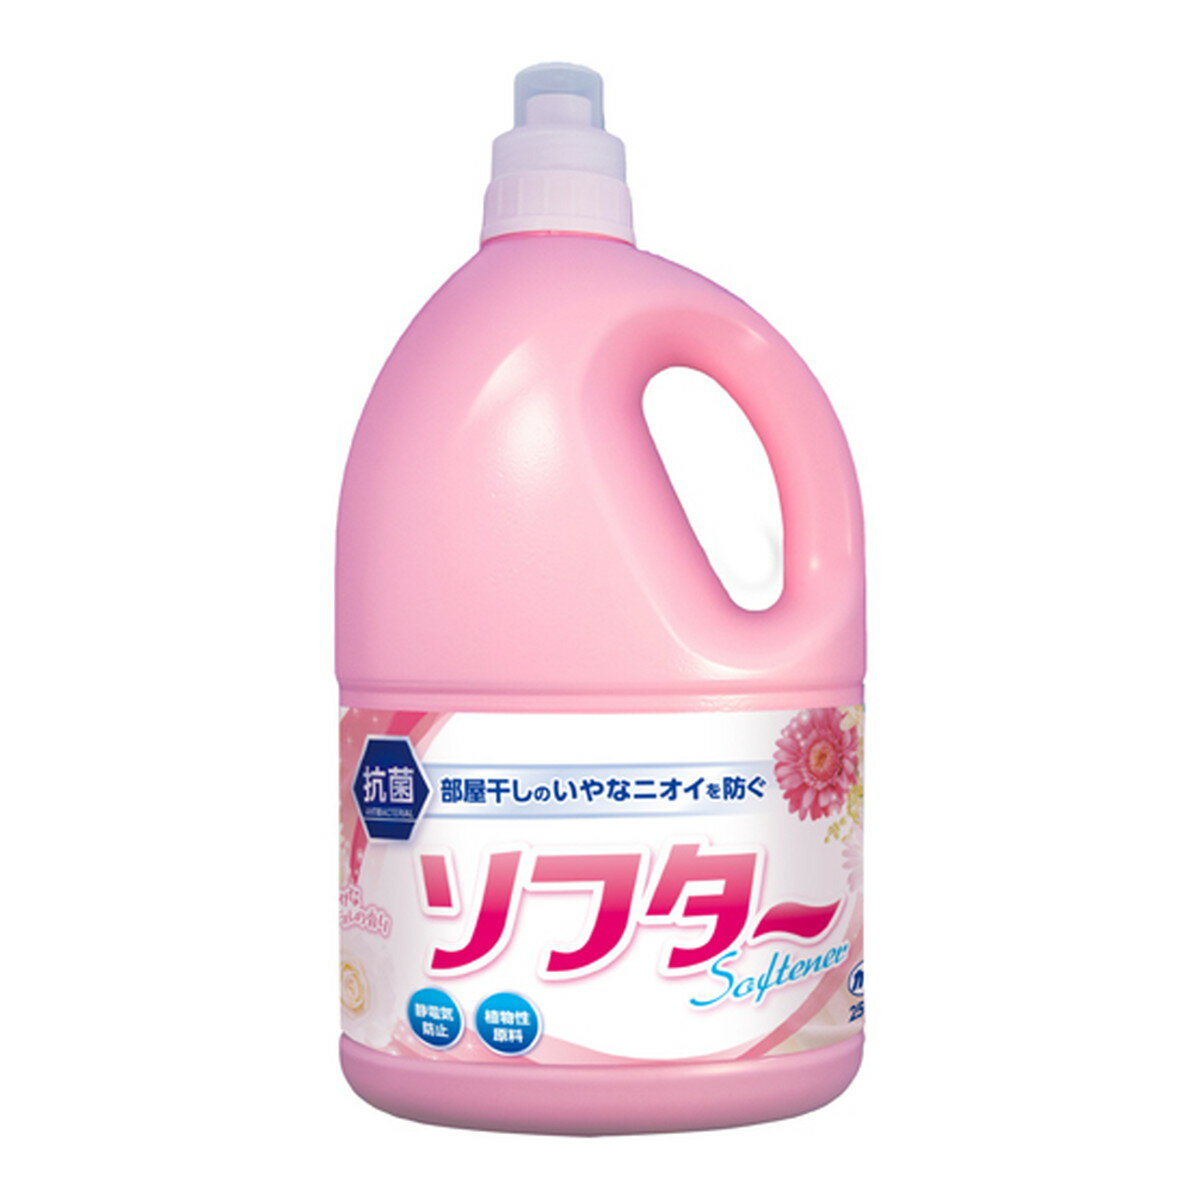 カネヨ ソフター ピンク 2500ml フローラルブーケの香り 柔軟剤